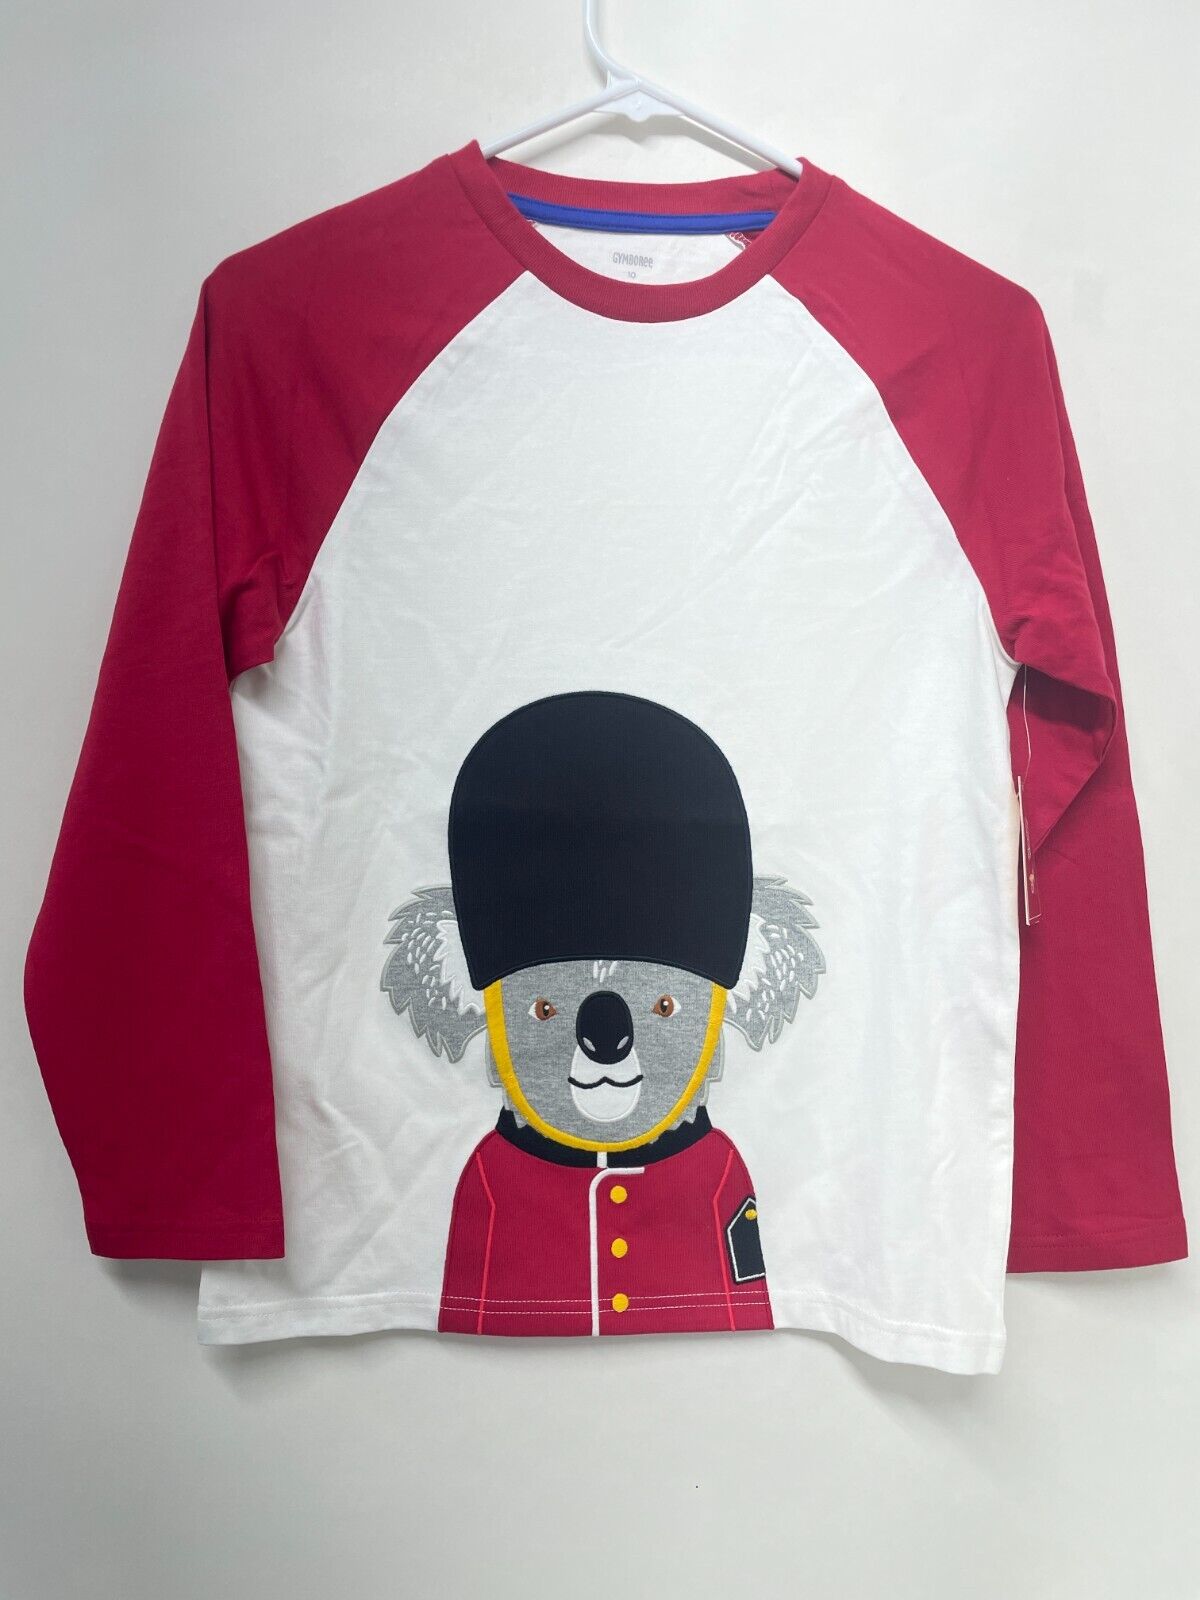 Gymboree Boys 10 Embroidered Koala Raglan Top London Calling Snow White Applique